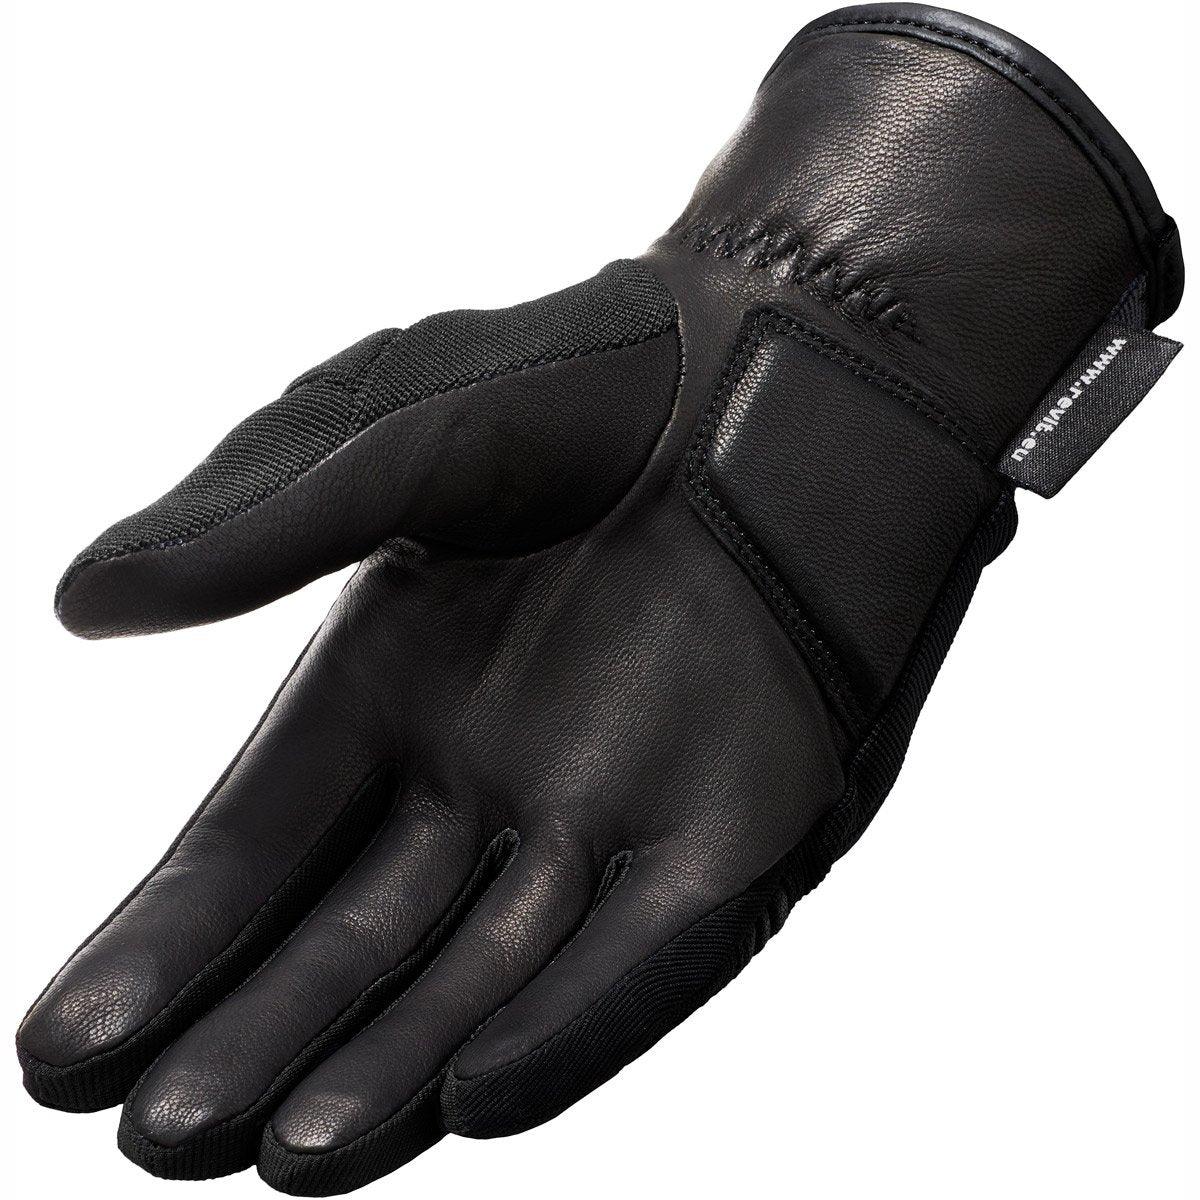 Rev It! Mosca H2O Ladies Gloves WP Black - Waterproof Motorcycle Gloves